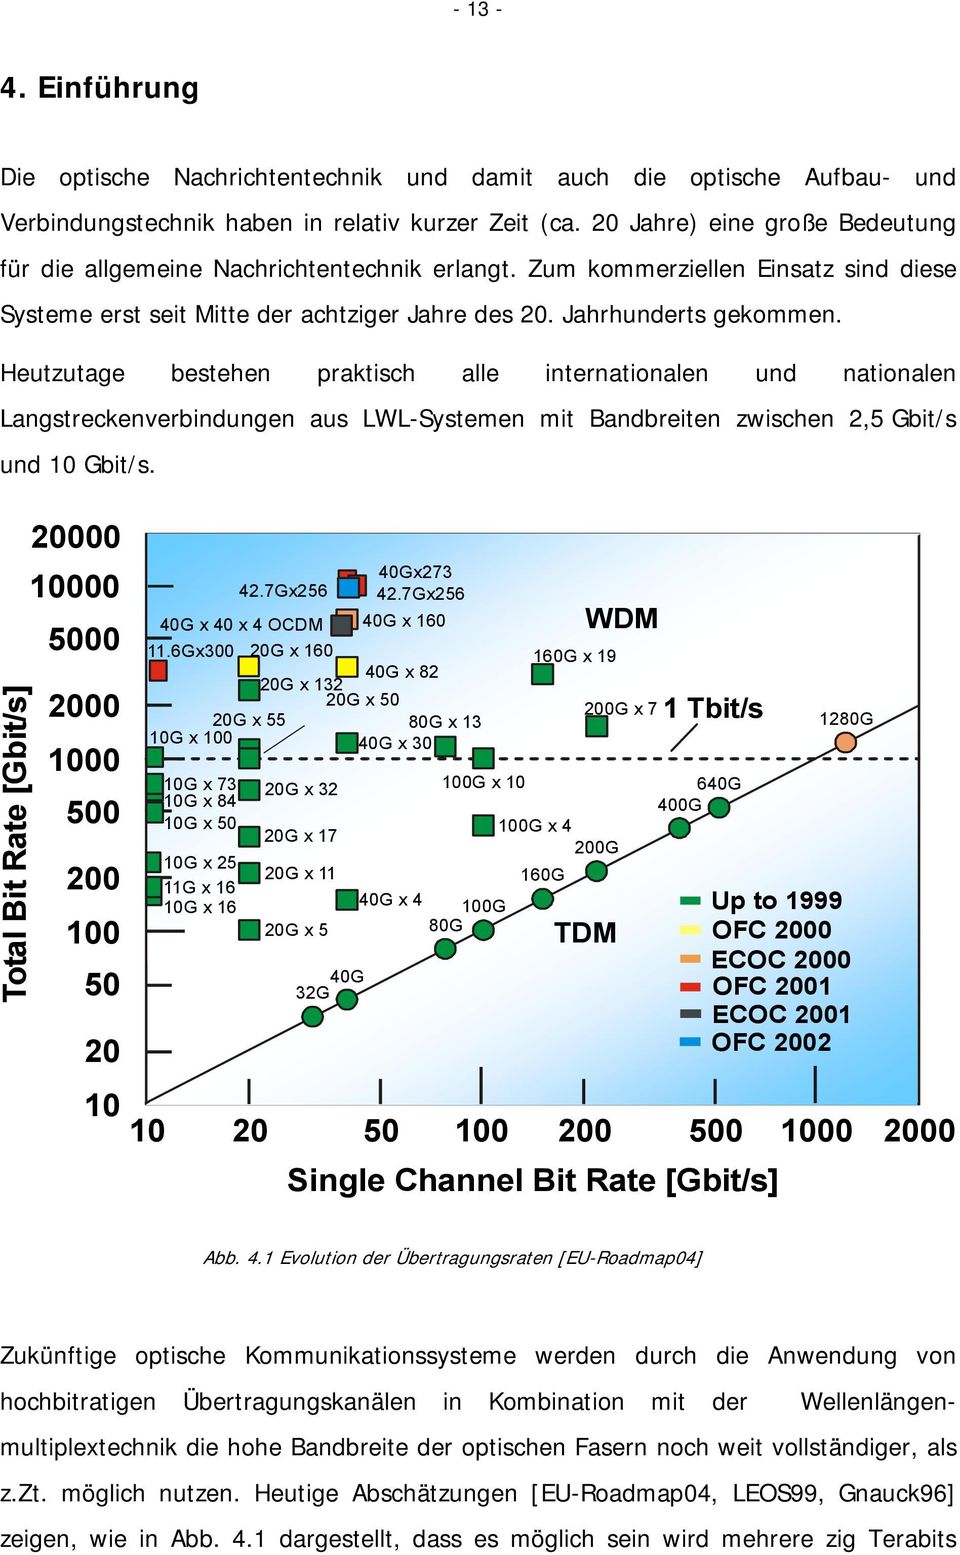 Heutzutage bestehen praktisch alle internationalen und nationalen Langstreckenverbindungen aus LWL-Systemen mit Bandbreiten zwischen 2,5 Gbit/s und 10 Gbit/s.